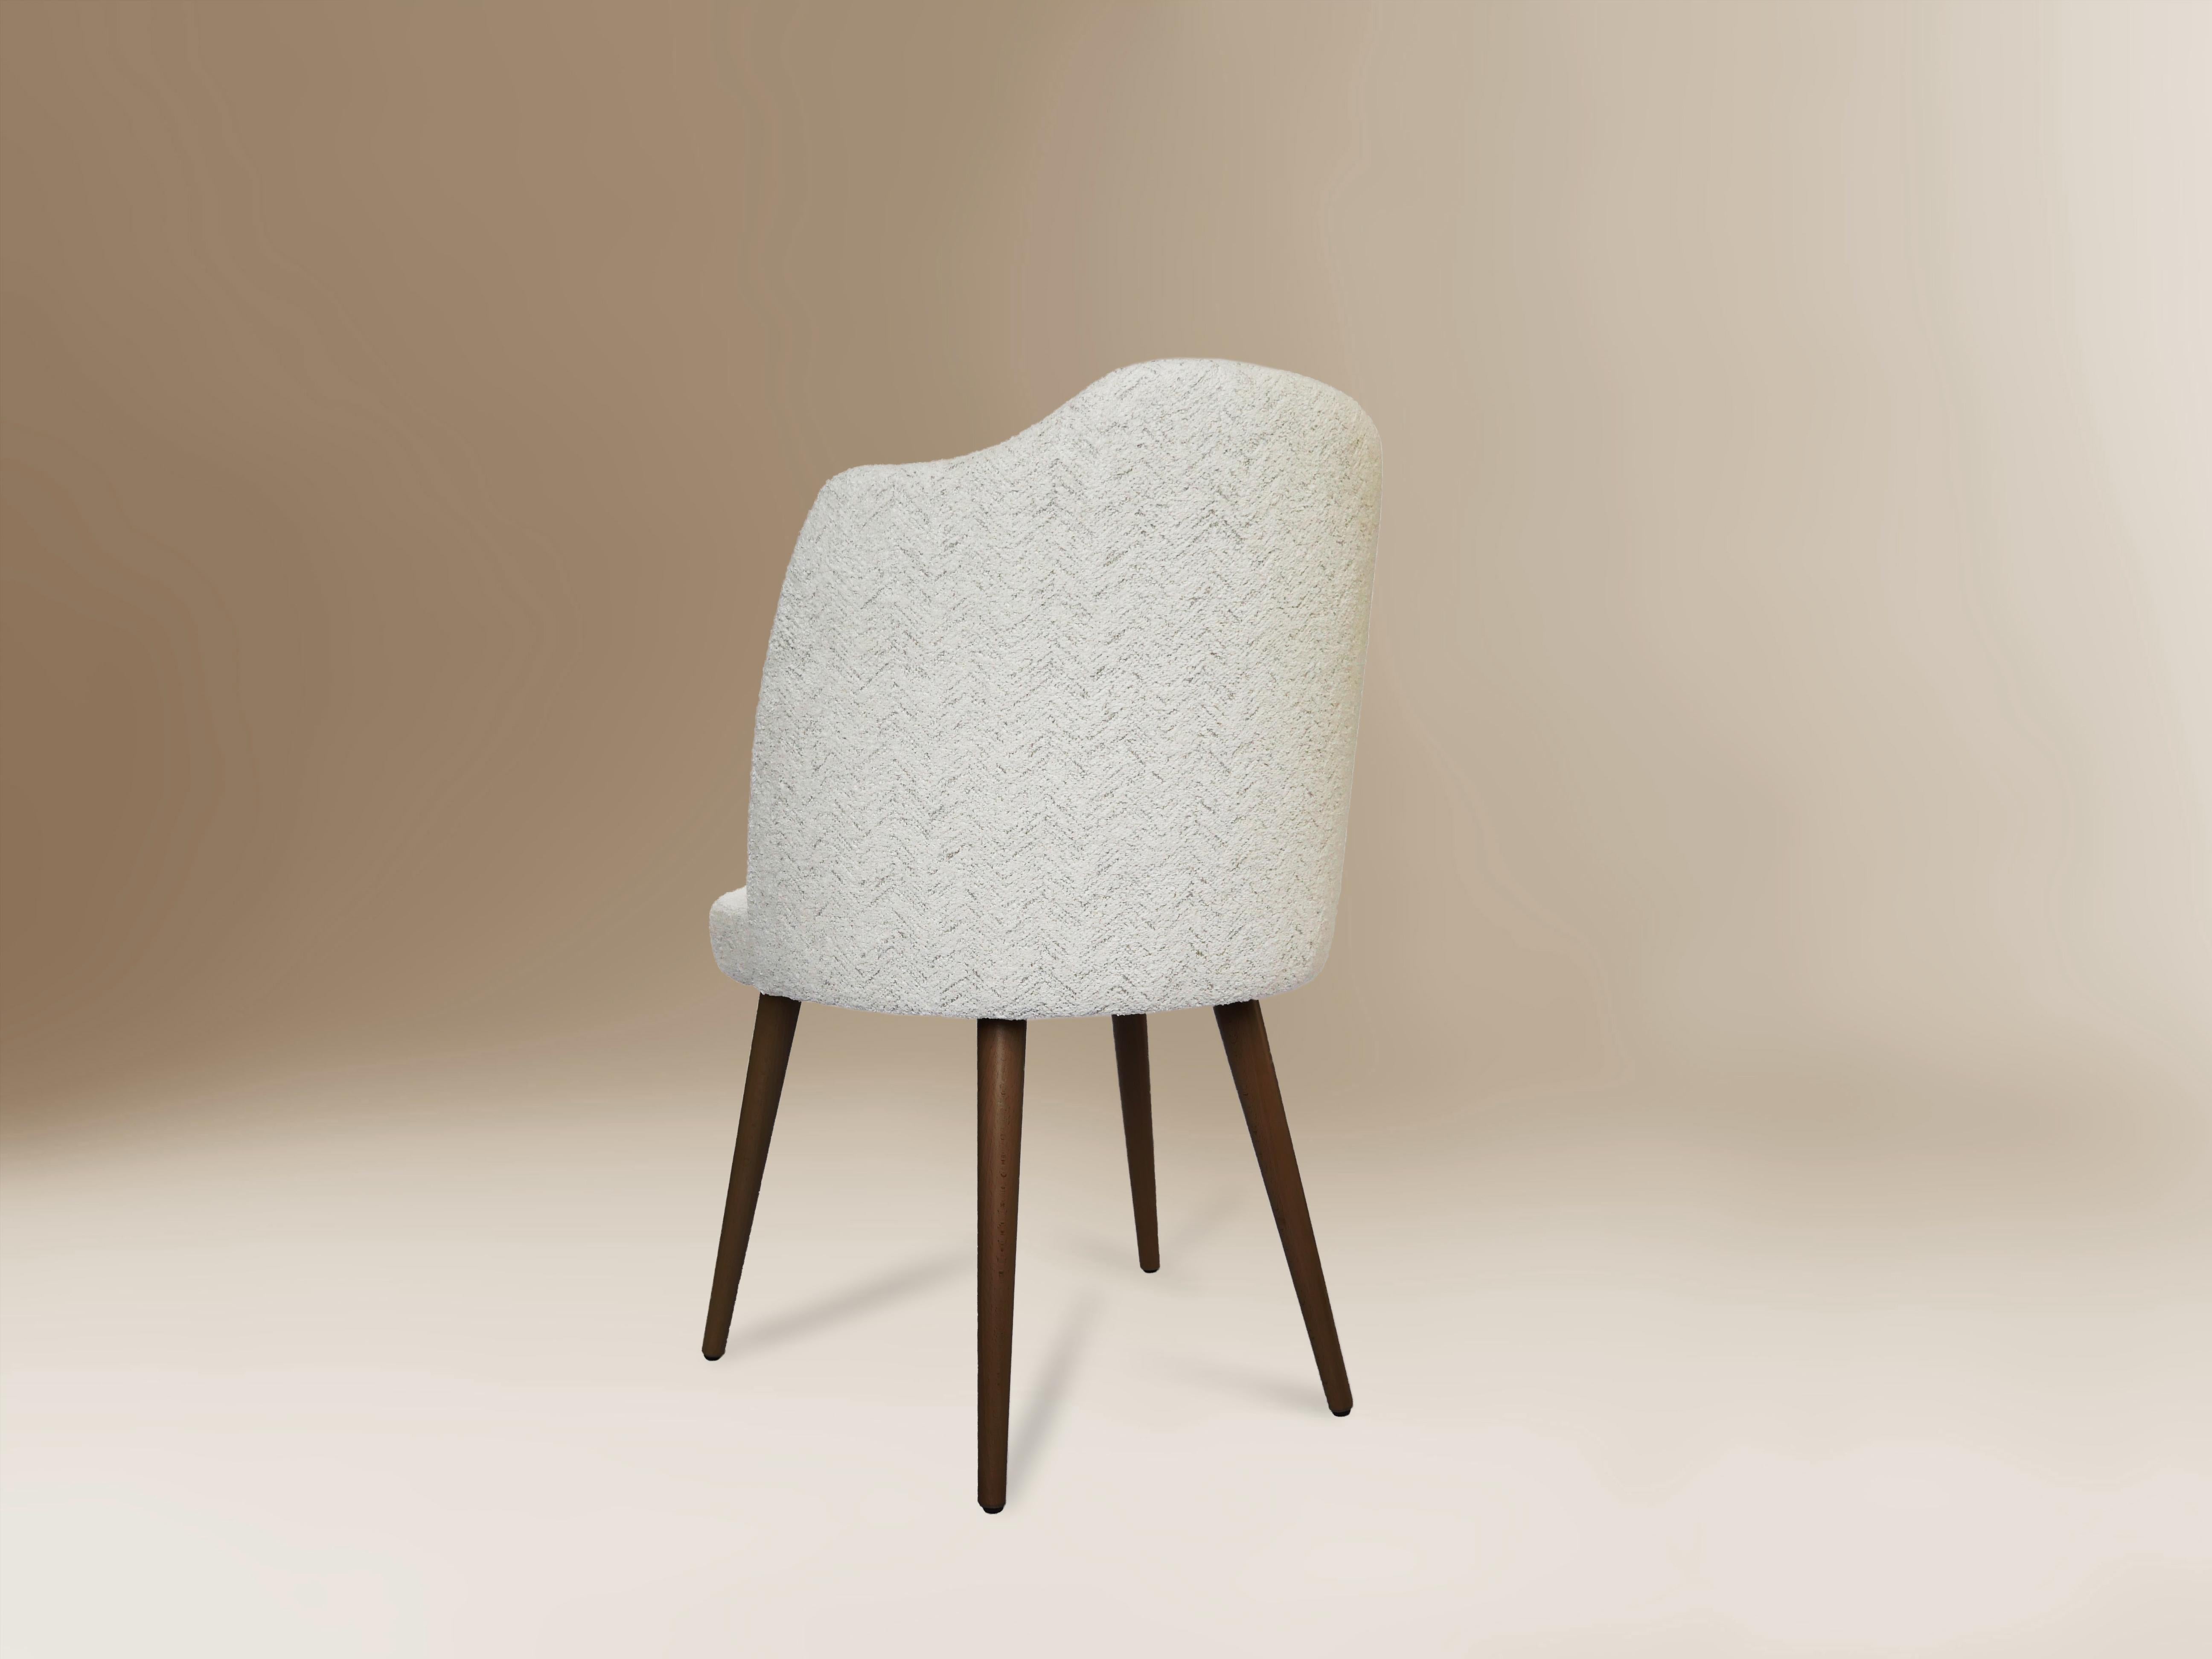 Portuguese Contemporary Dining Chair Fabric Wooden Feet Designer Sergio Prieto Dovain Studi For Sale